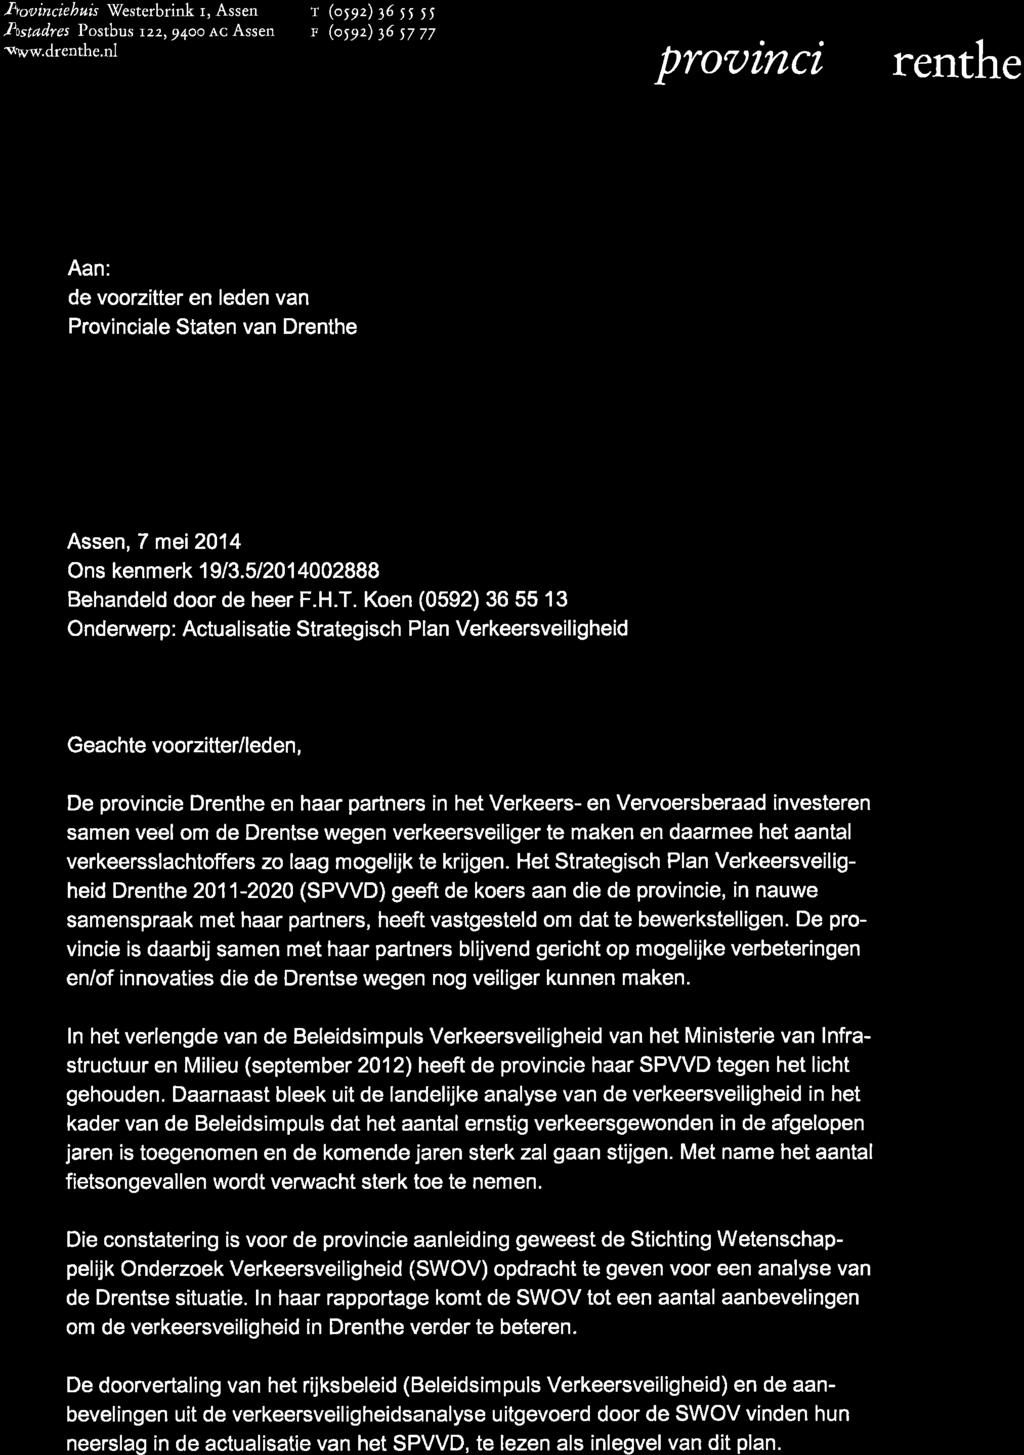 Koen (0592) 36 55 13 Onderurrerp : Actual isatie Strategisch Plan Verkeersveil i gheid Geachte voorzitter/leden, De provincie Drenthe en haar partners in het Verkeers- en Vervoersberaad investeren